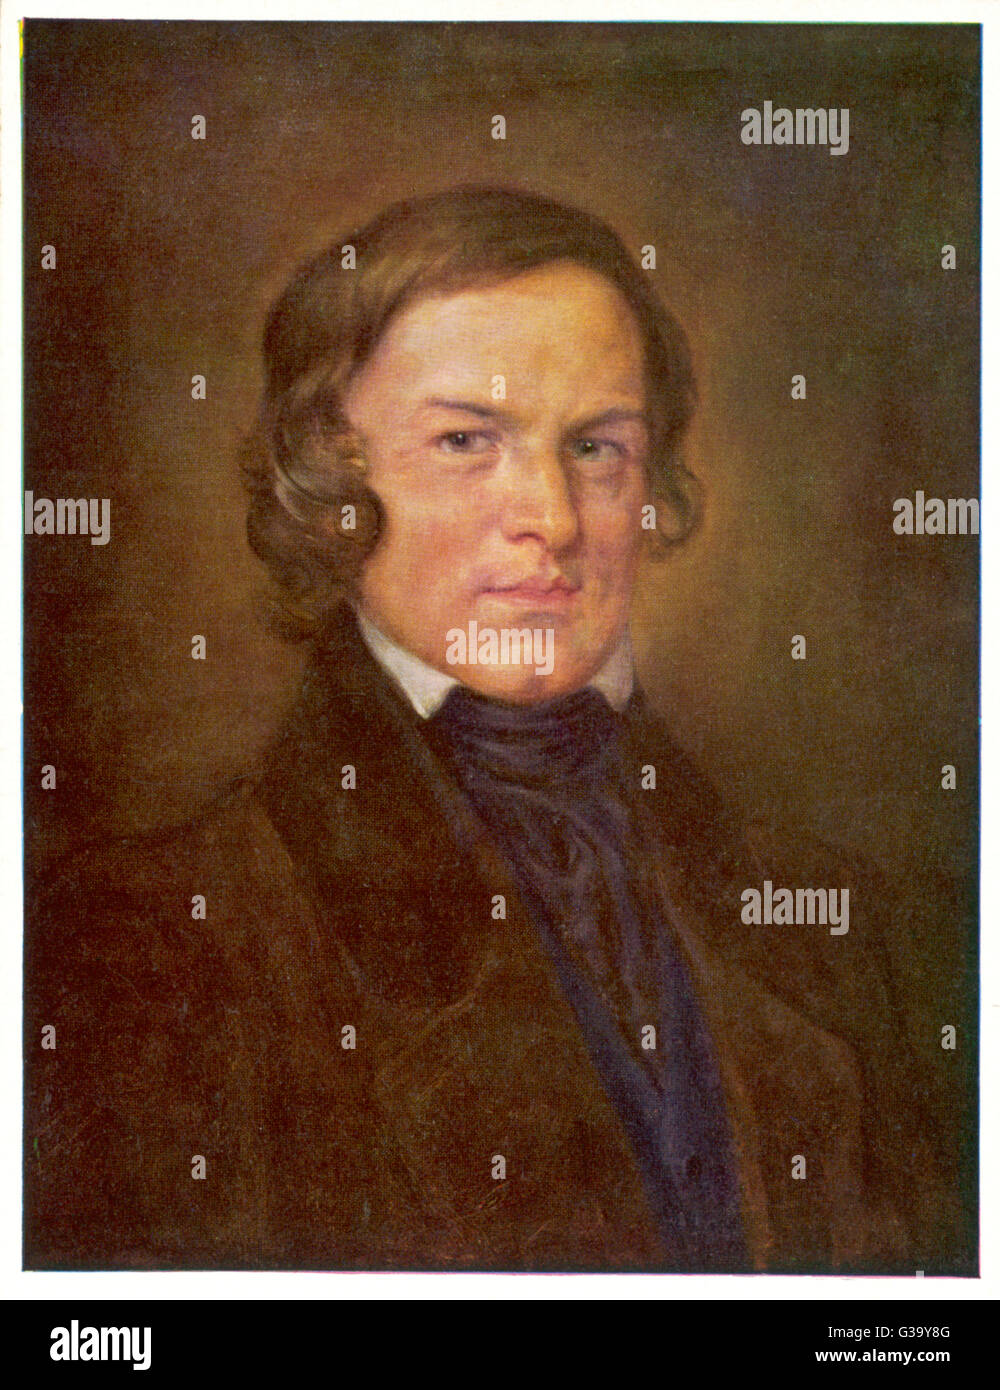 ROBERT SCHUMANN, compositeur allemand Date : 1810 - 1856 Banque D'Images